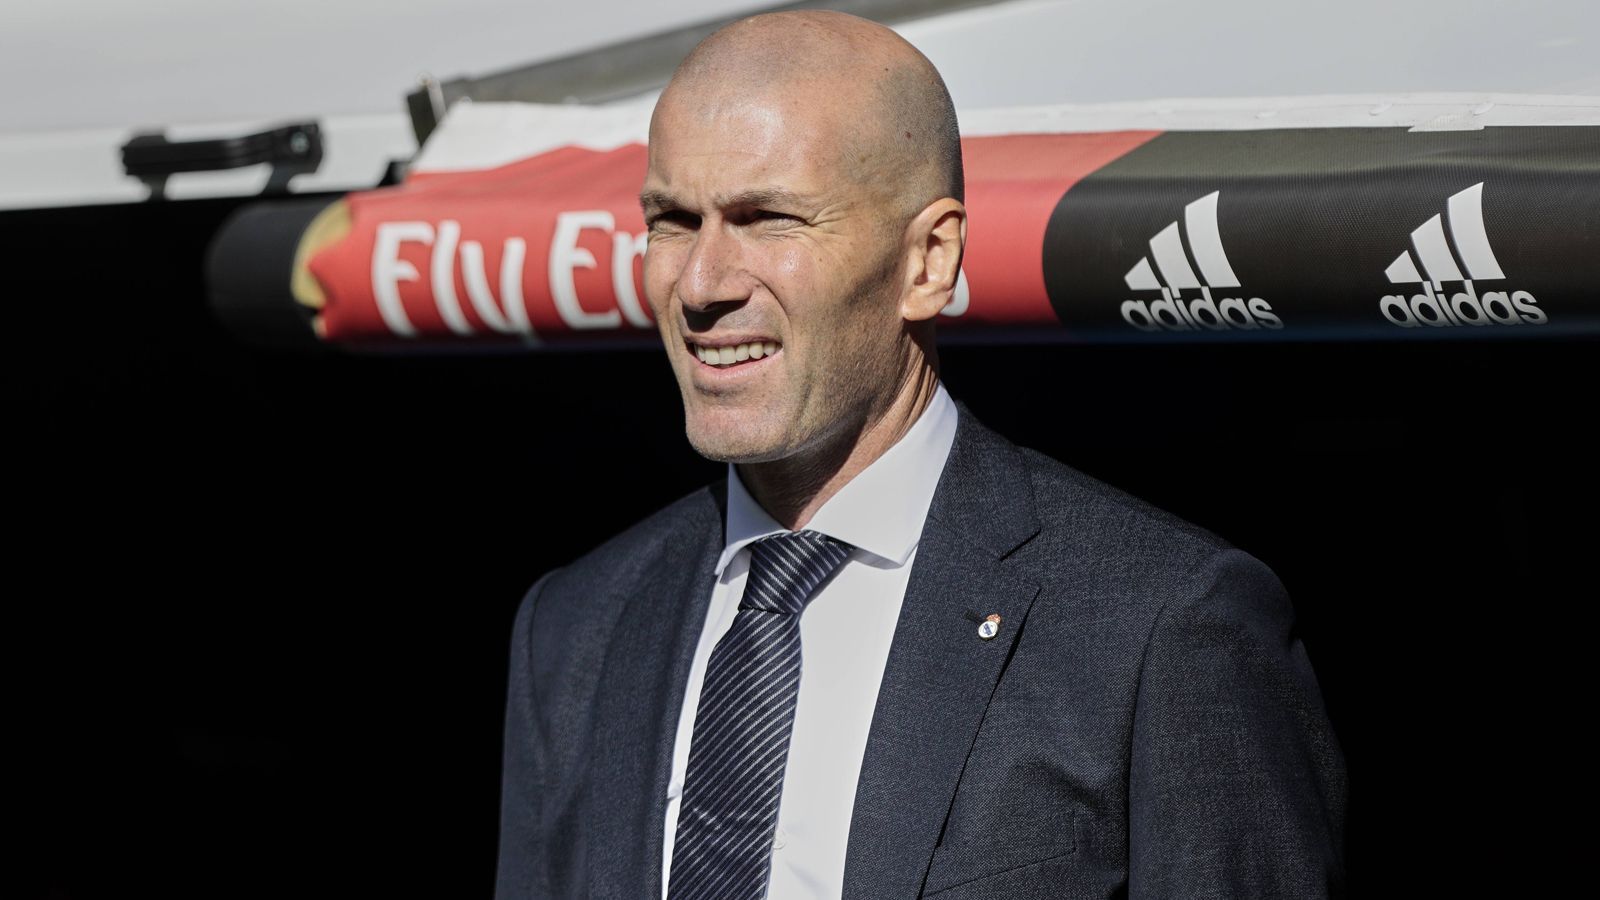 
                <strong>Zinedine Zidane (Real Madrid 2016-18 und 2019-?)</strong><br>
                Zinedine Zidane kehrt nach nicht einmal einjähriger Pause auf die Trainerbank bei Real Madrid zurück. Dreimal hatte er zwischen 2016 und 2018 die Champions League gewonnen, war daraufhin im vergangenen Sommer zurückgetreten. Mit ihm ging auch Ronaldo und ganz offensichtlich auch der Erfolg. Real spielt derzeit eine wenig königliche Saison. Und so holte Real-Präsident Florentino Perez jetzt seinen Goldjungen zurück. Zidane unterschrieb einen Vertrag bis Juni 2022 und gewann gleich das erste Spiel nach seiner Rückkehr mit 2:0 gegen Celta Vigo (Tore von Isco und Bale). Er ist nicht der einzige Coach, der an die Stätte seiner größten Erfolge zurückkehrt. Allerdings verliefen die Trainer-Comebacks in der Vergangenheit nicht immer wie erwünscht. ran.de gibt einen Überblick über die berühmtesten "Wiederholungstäter" der Fußballgeschichte. 
              